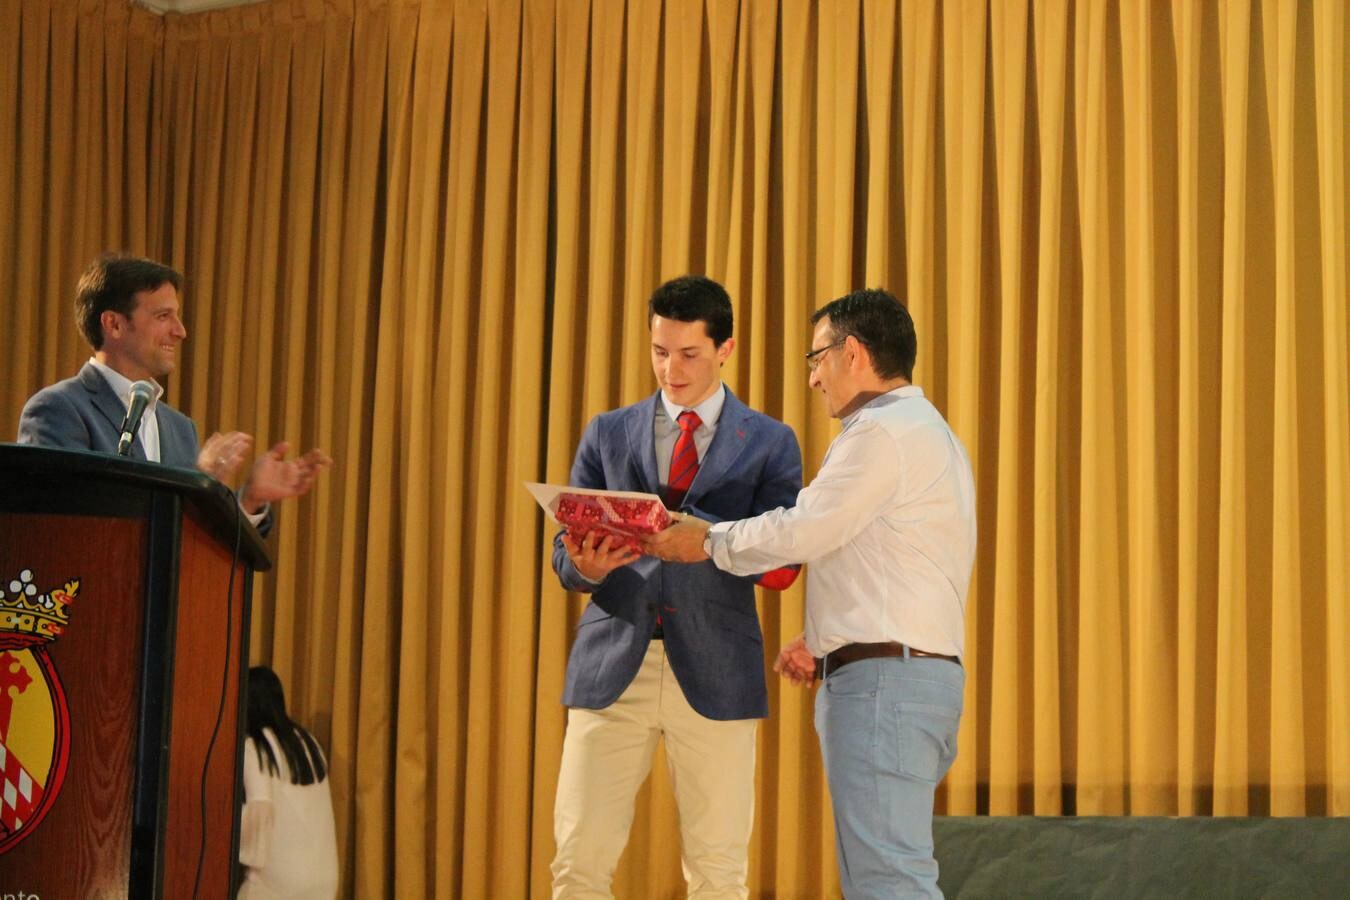 Acto de graduación de los alumnos del I.E.S. Maestro Juan Calero de Monesterio. Promoción 2015-2016